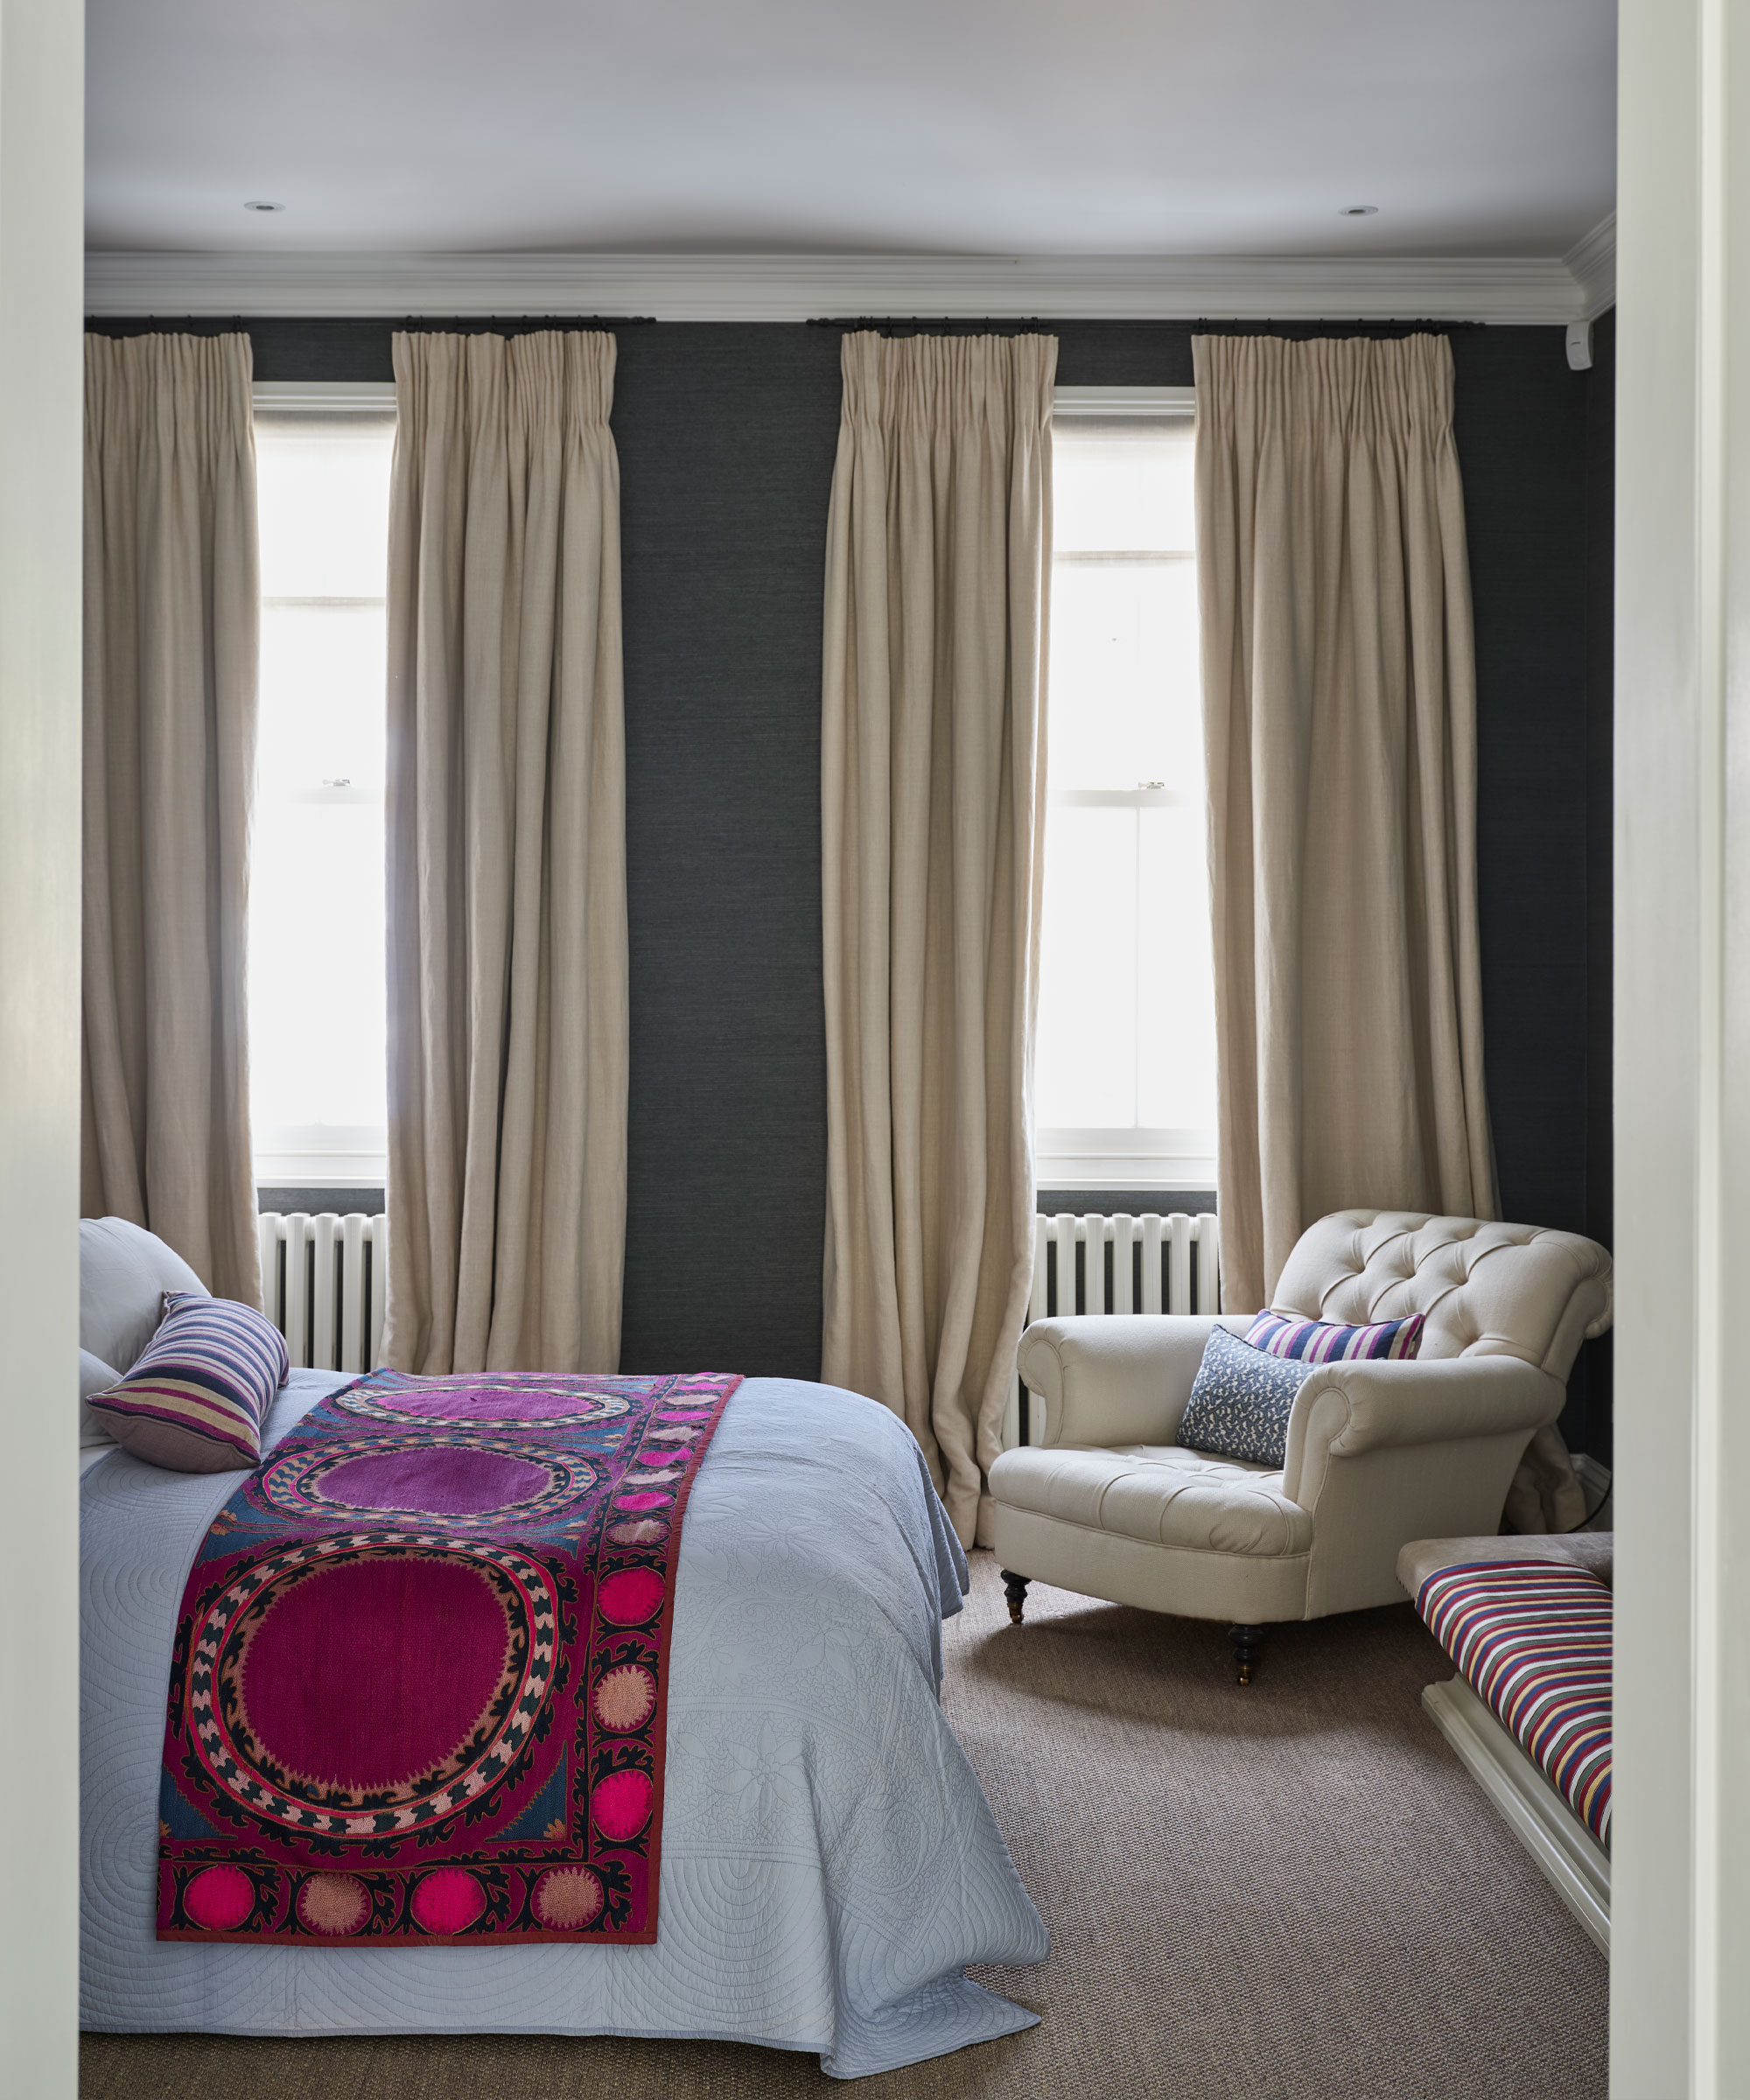 Dormitorio acogedor con paredes pintadas de gris oscuro, cortinas color crema, cama con sábanas blancas y manta rosa, sillón color crema